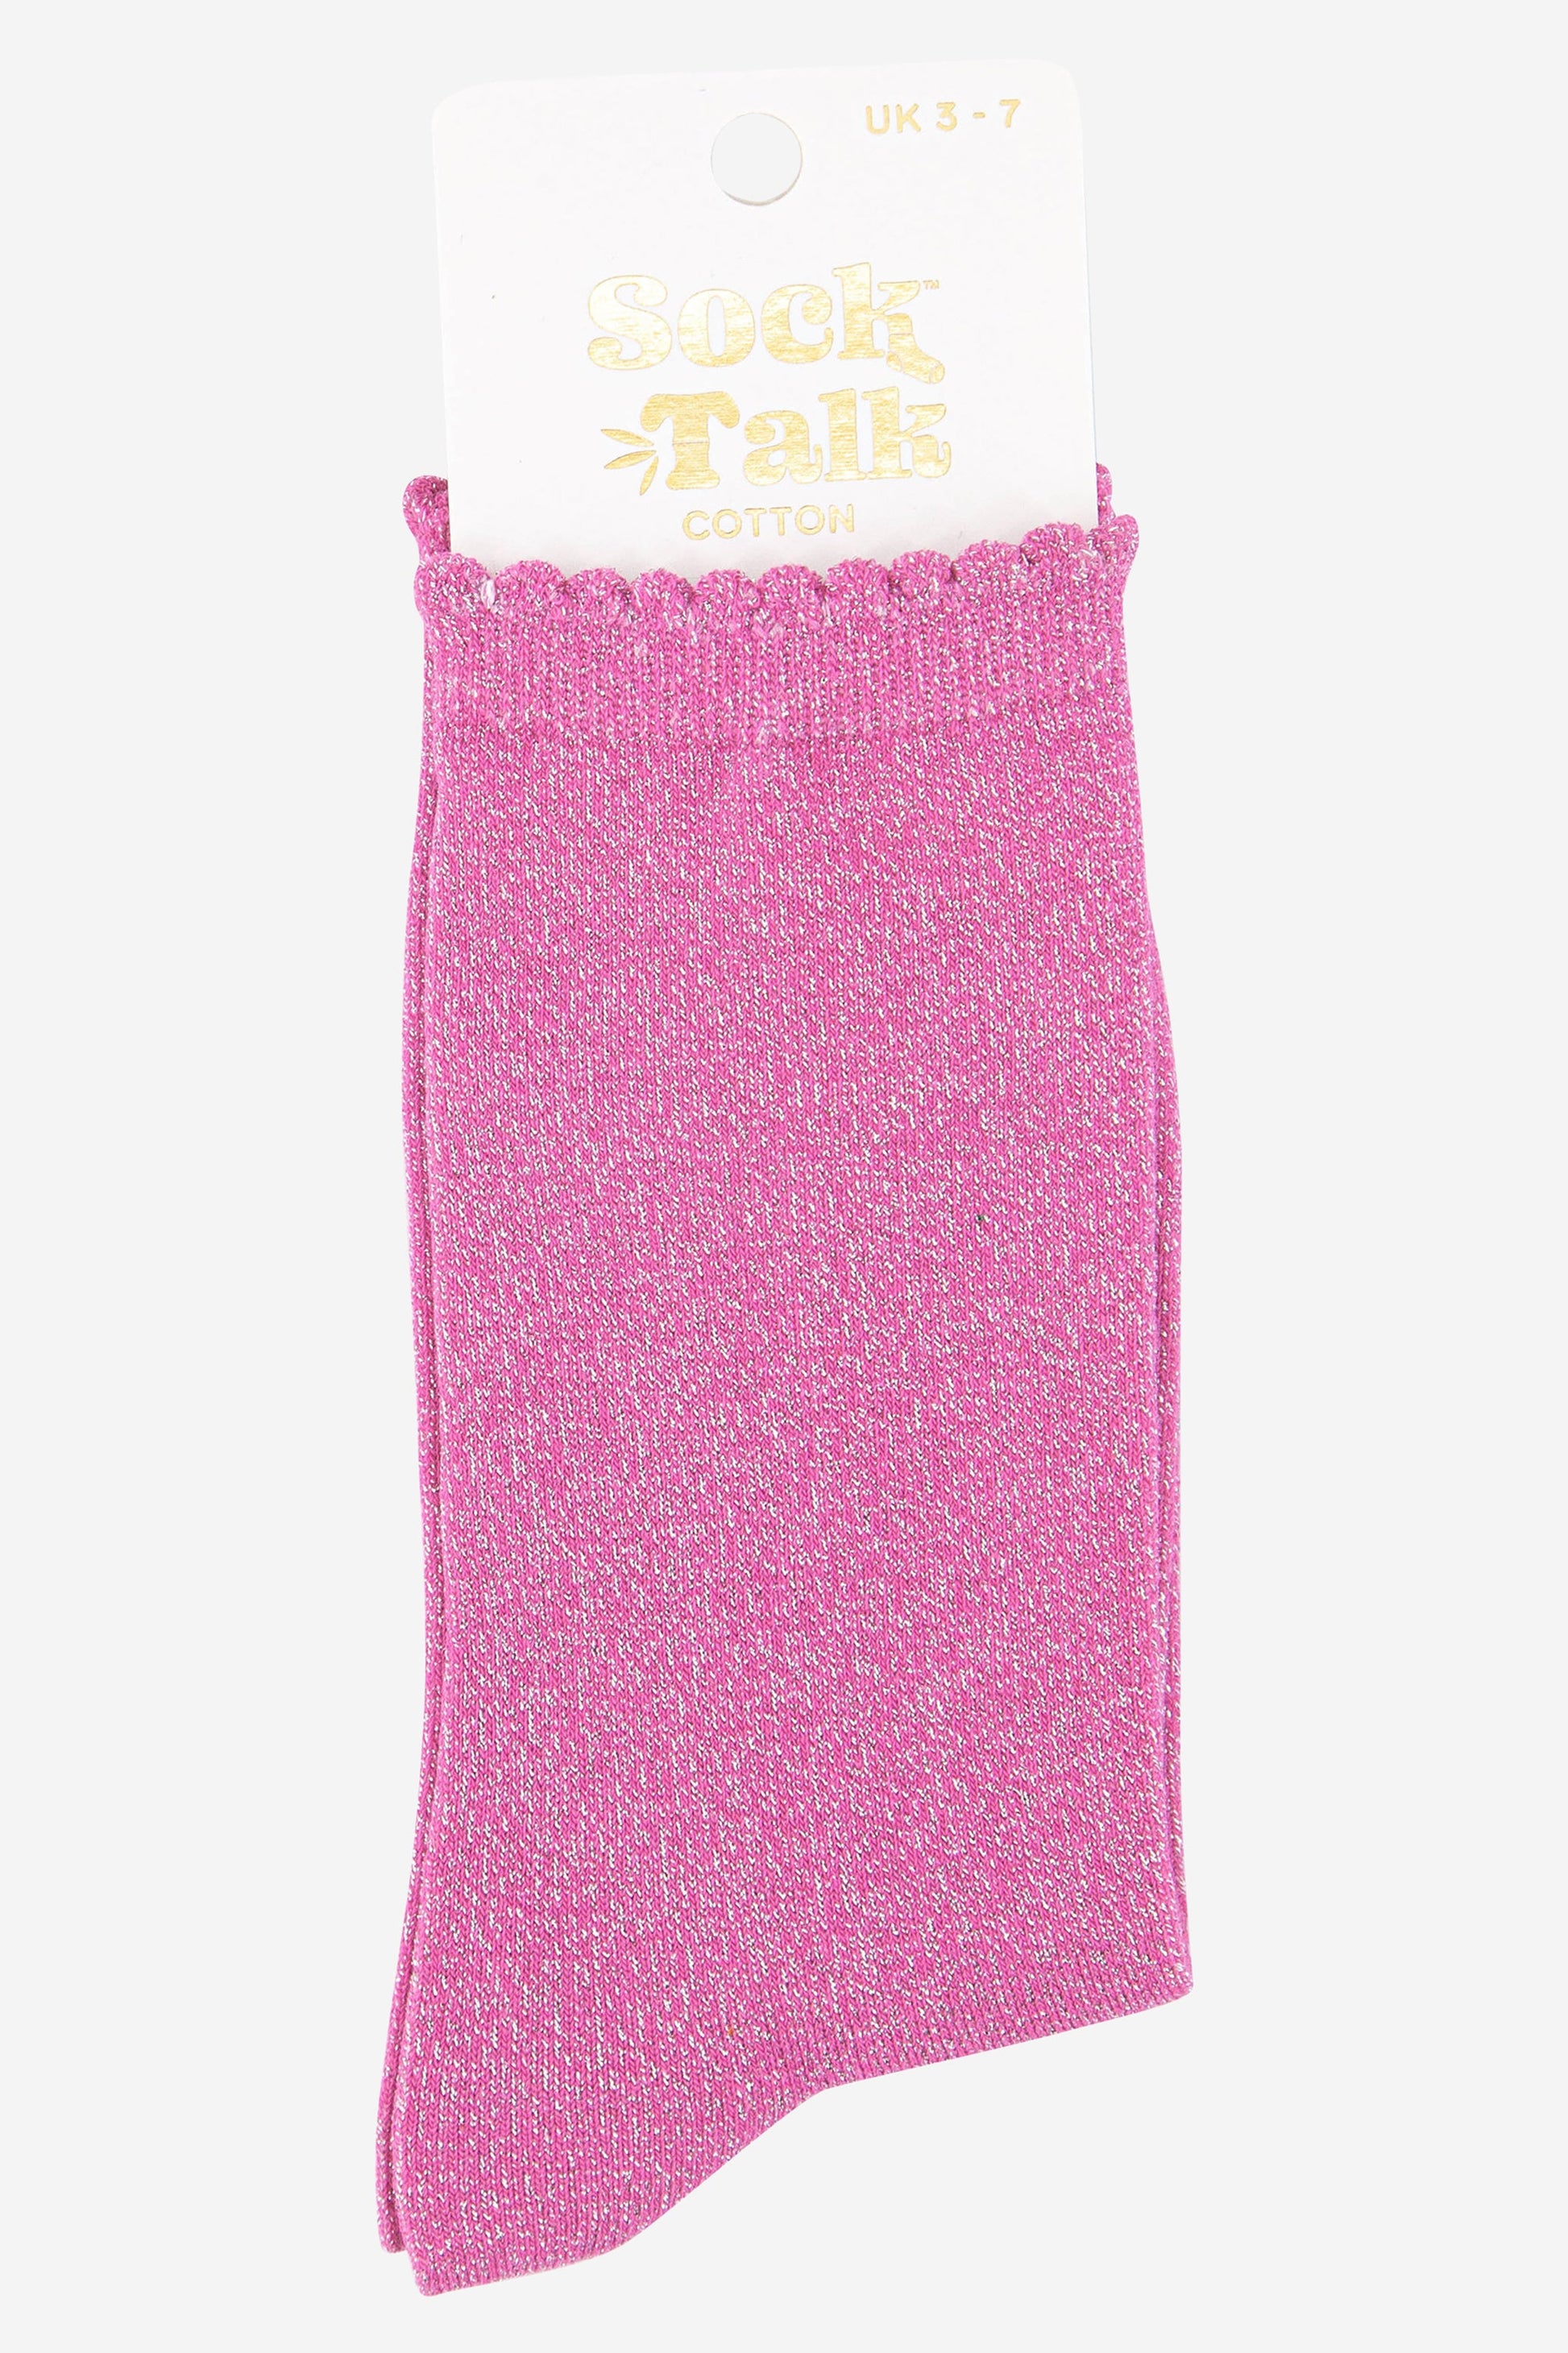 hot pink scalloped cuff cotton glitter socks uk size 3-7